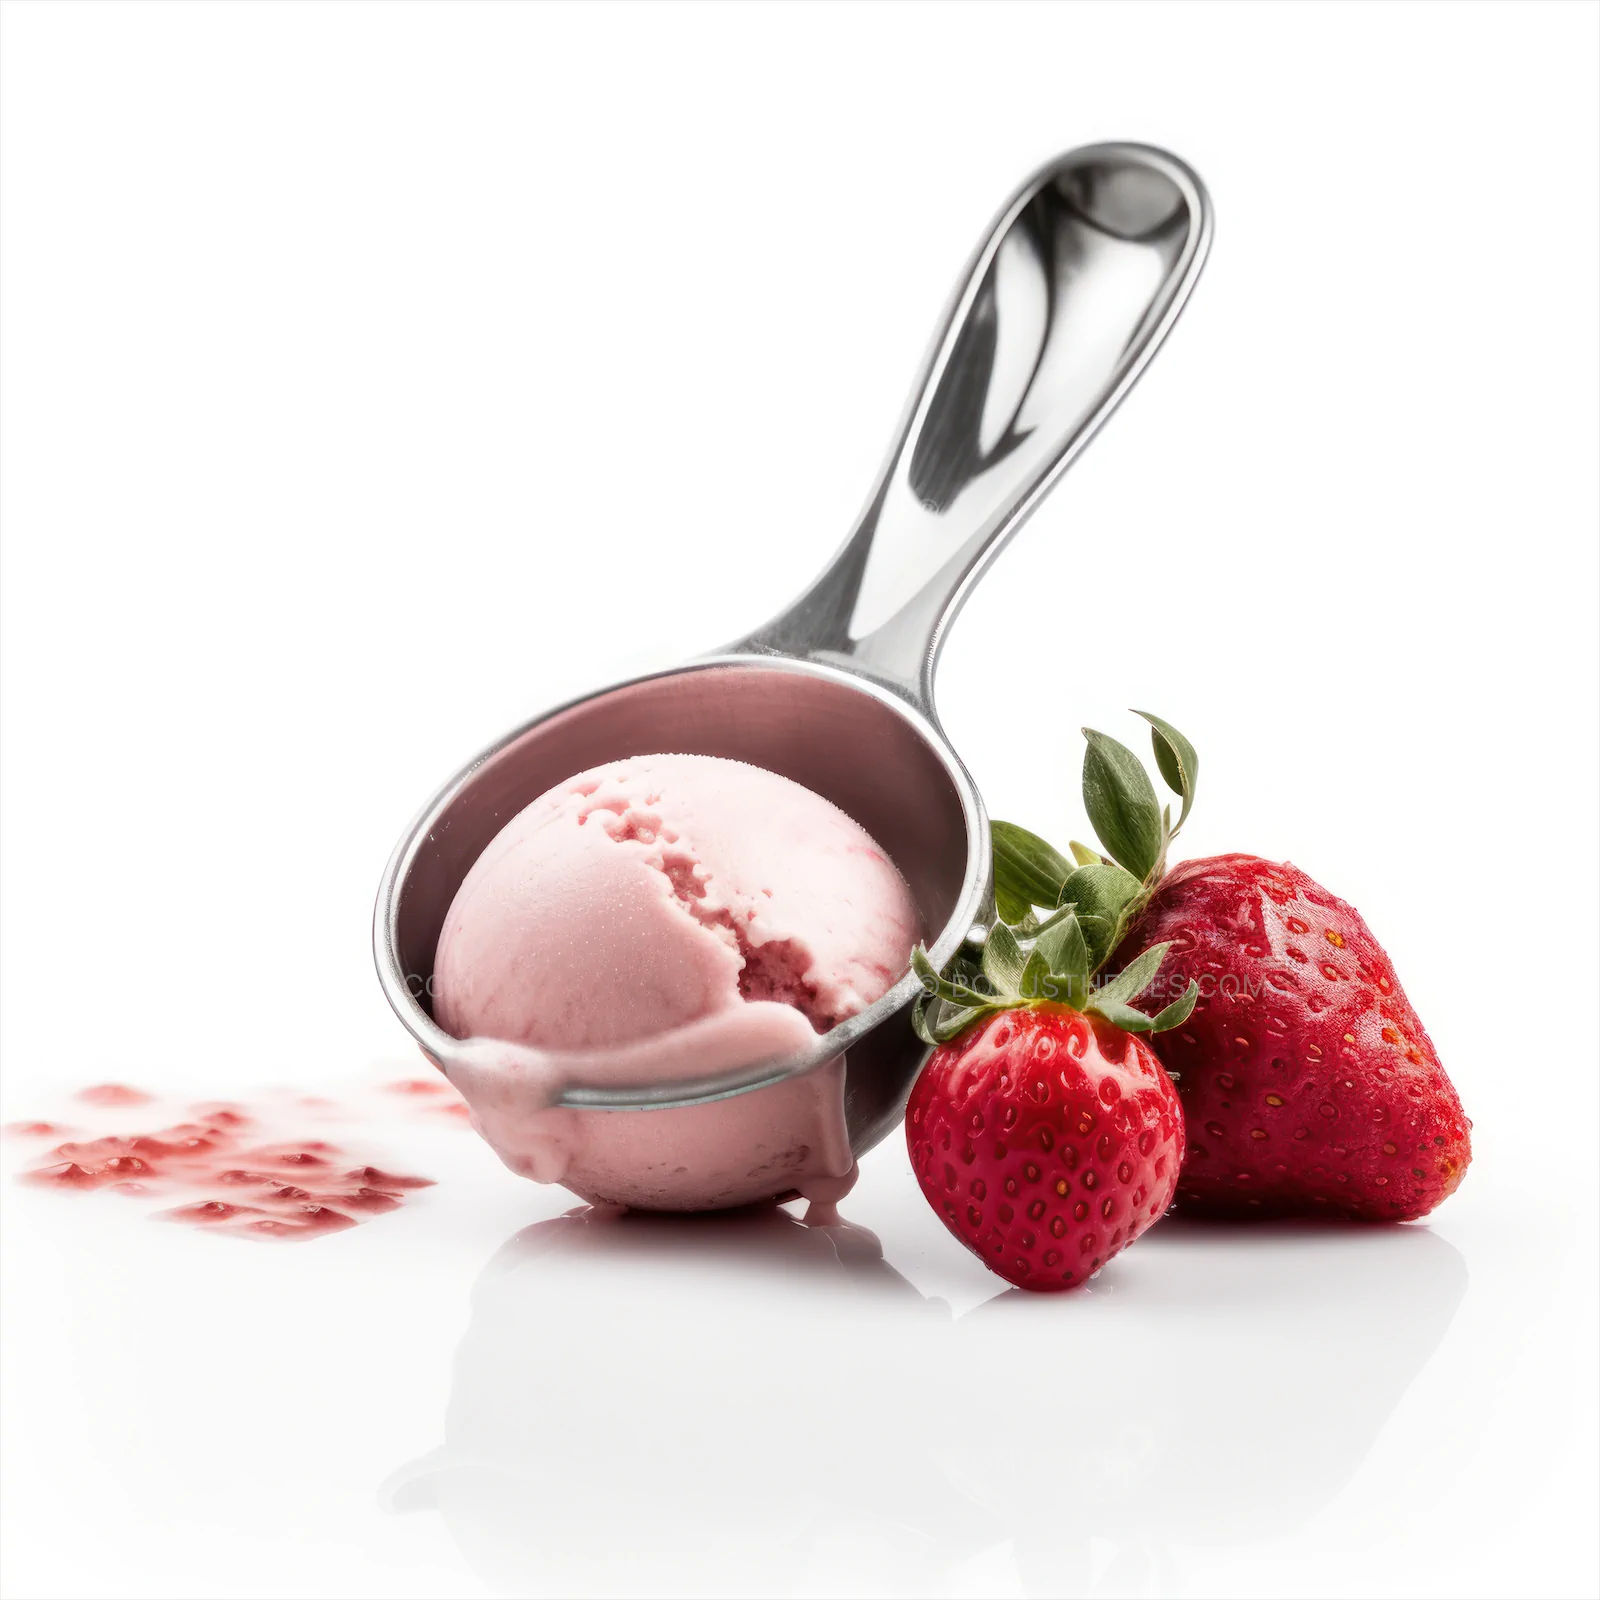 Scoop with strawberry ice cream